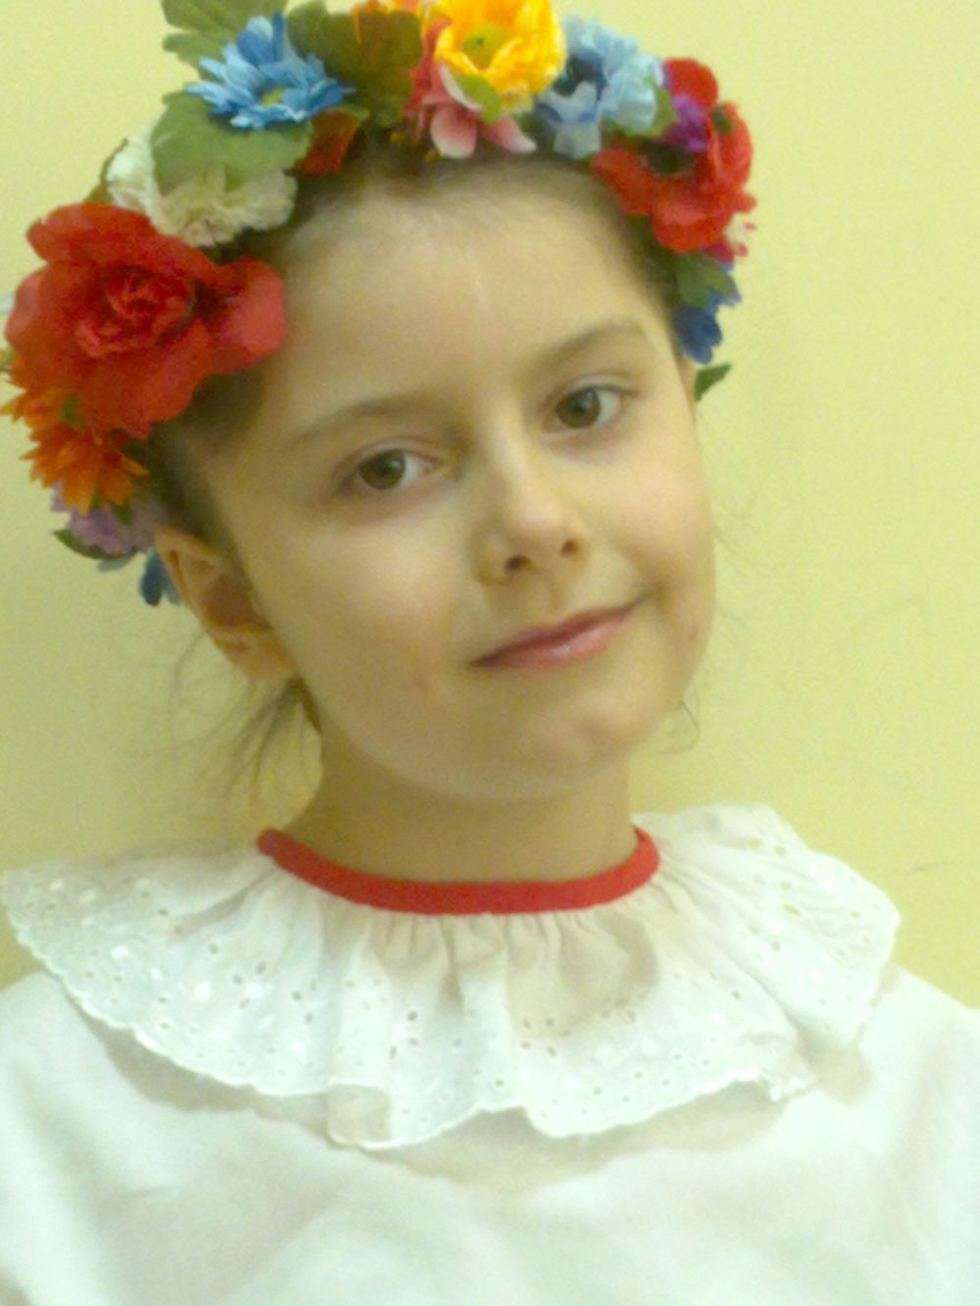  Amelia Wójtowicz, 8 lat. Jest artystyczną duszą - tańczy w zespole i chodzi do szkoły muzycznej, gdzie uczy się grać na fortepianie, dzwonkach i flecie. Amelka to bardzo żywe dziecko, w domu ciągle tańczy, śpiewa lub gra. Amelia lubi też wymyślać różne historie. 